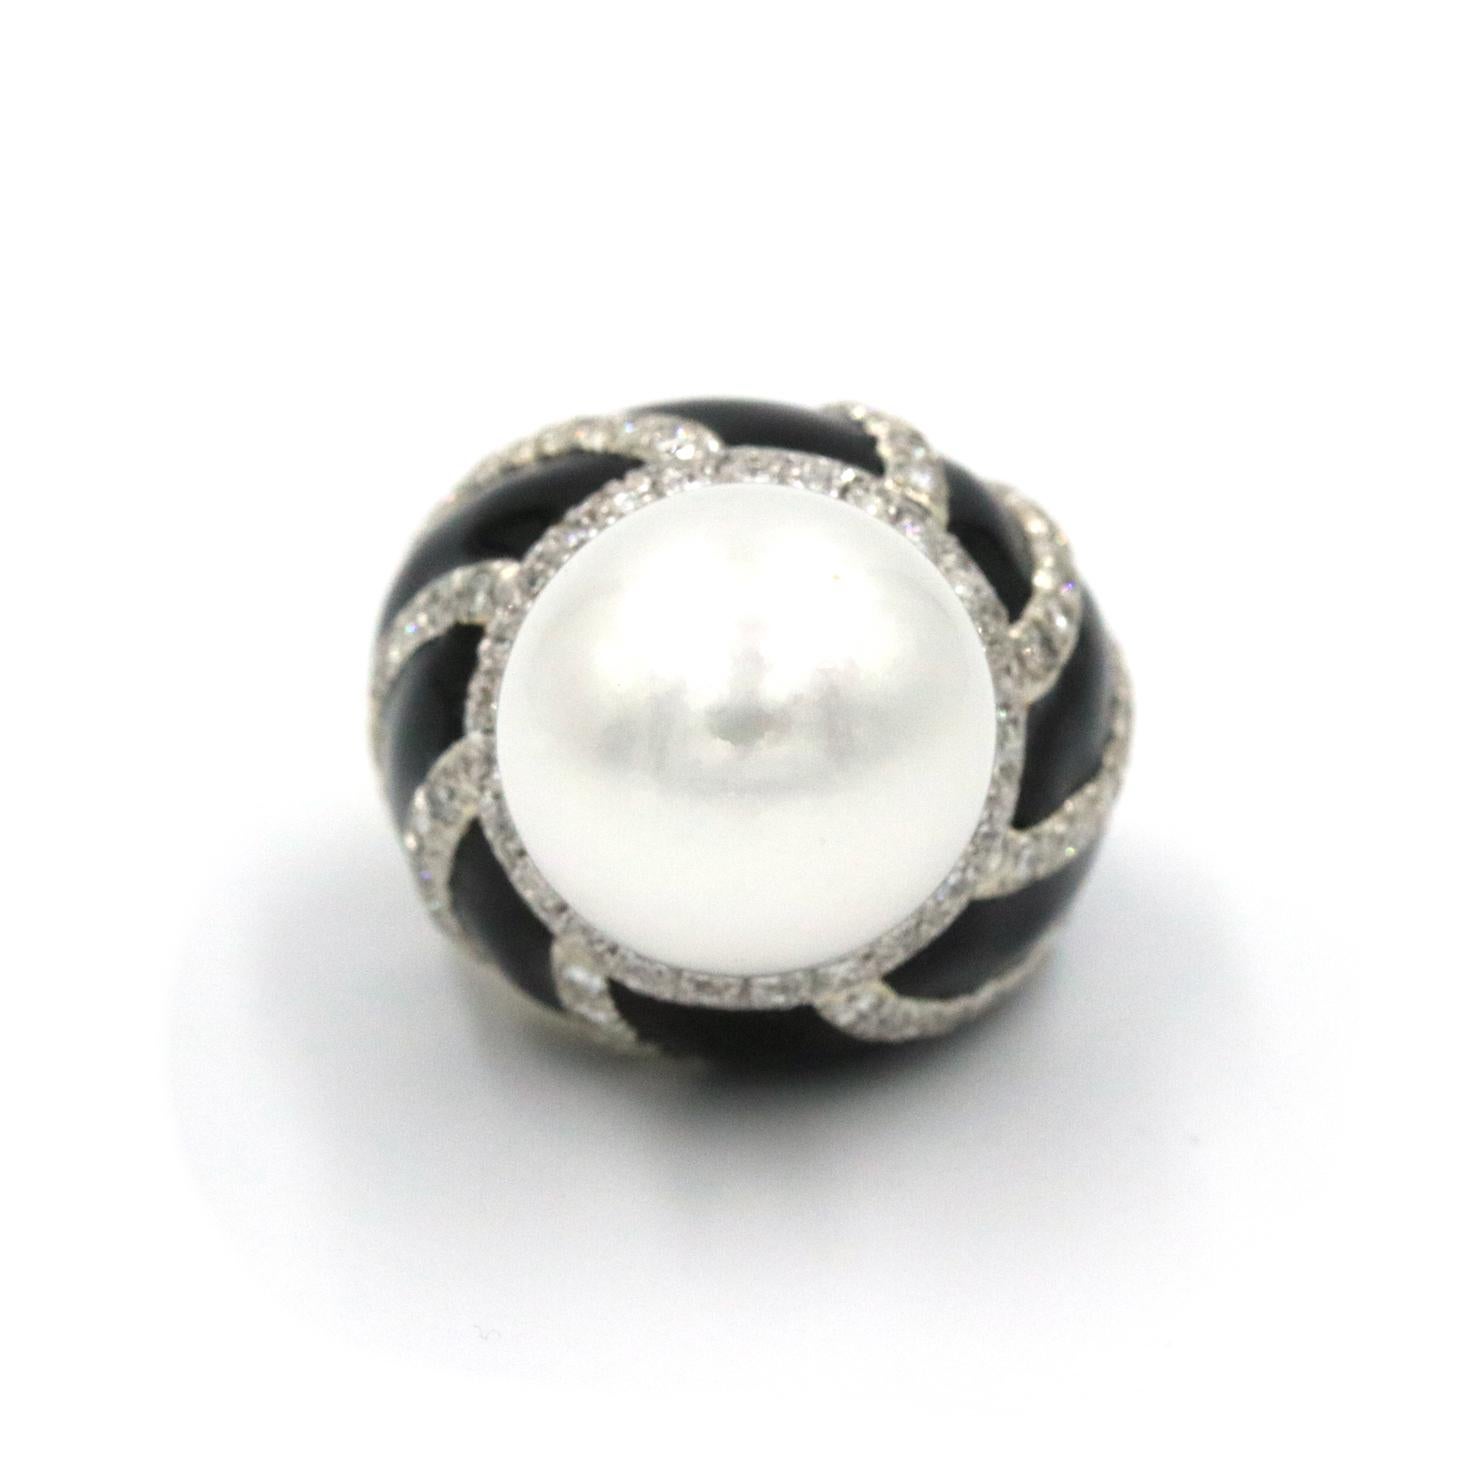 Bague David Webb en forme de dôme avec perles et diamants. Cette bague comporte une perle de 16 mm et des diamants ronds en platine, en or jaune 18 carats et en émail noir.